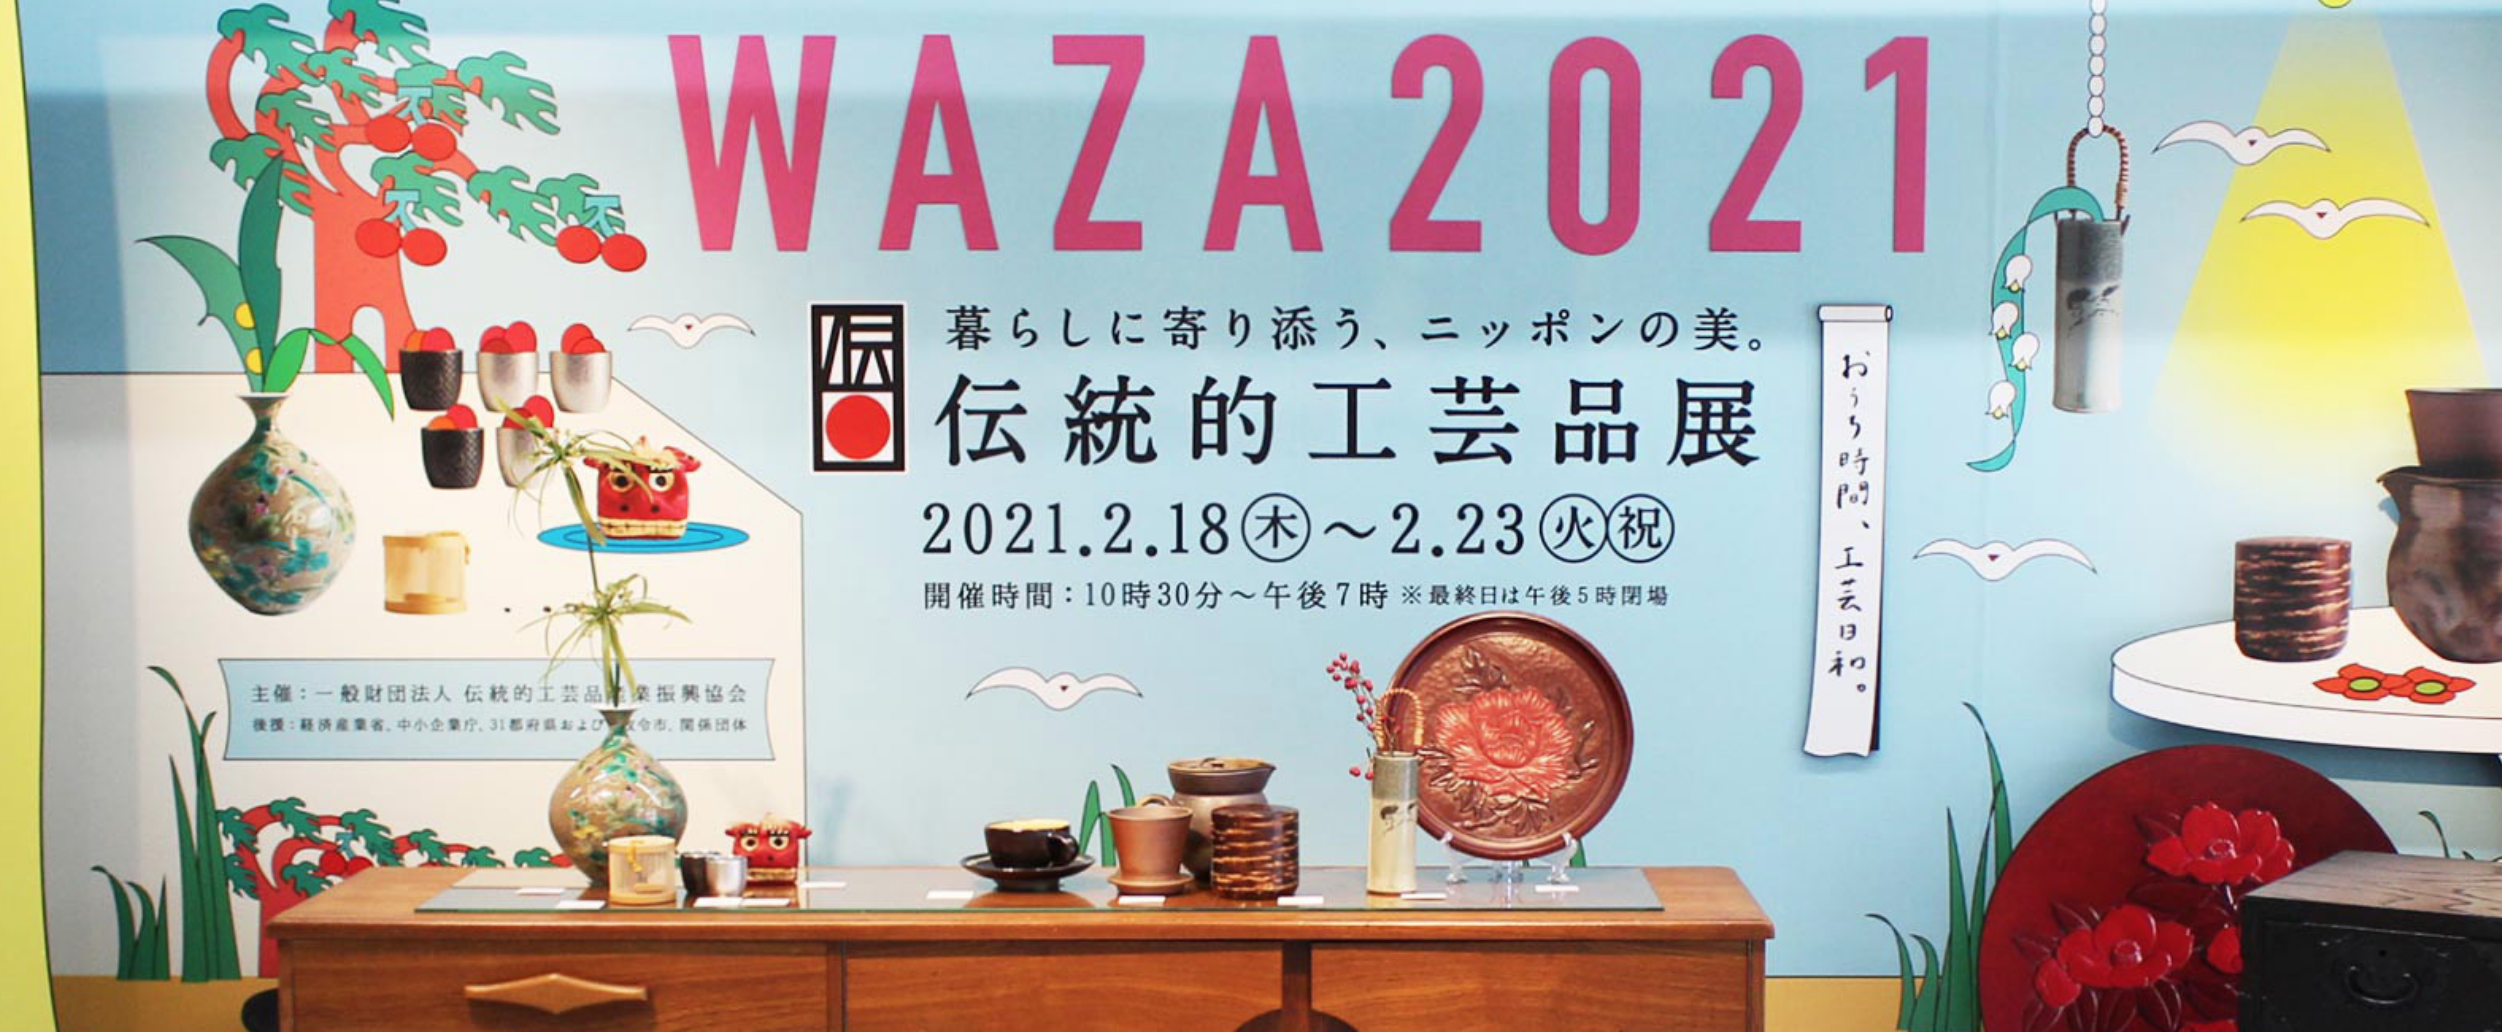 伝統工芸品展WAZA2021